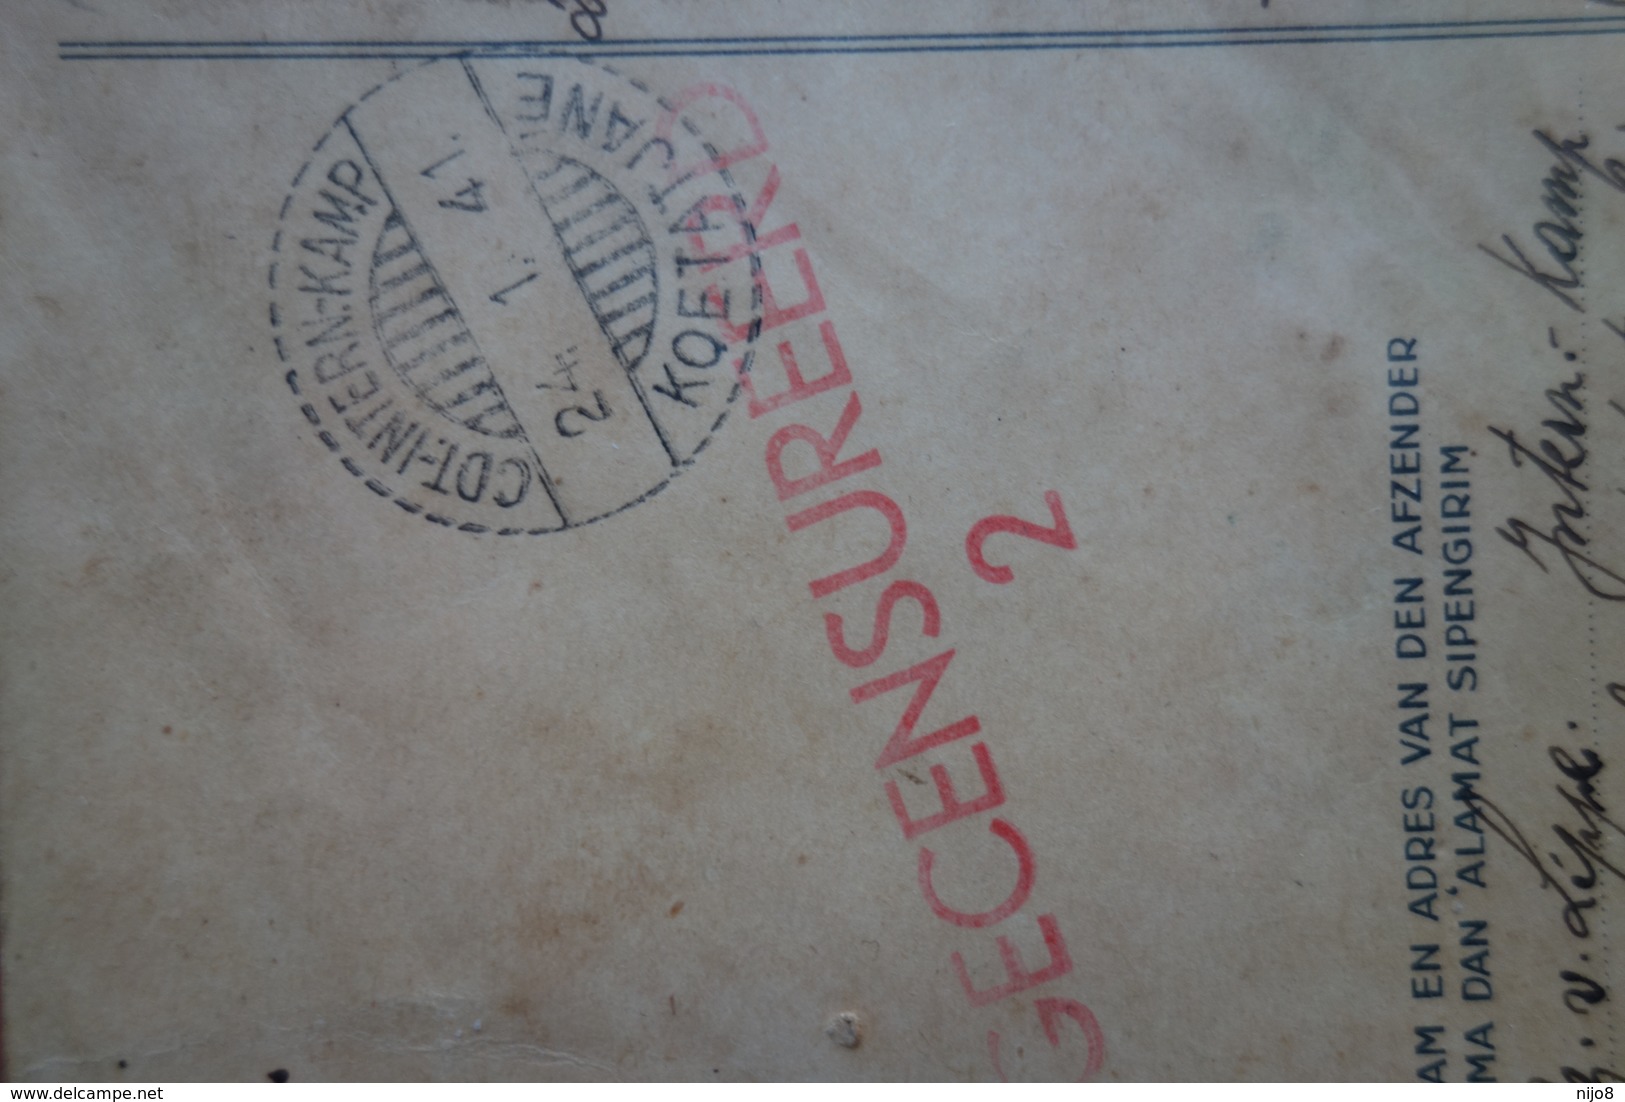 Netherlands Indies : Old Briefkaart  CDT-INTERN-KAMP-KOETATJANE Via MEDAN To AIRMADIDI /MENADO (24.1.41) - Netherlands Indies